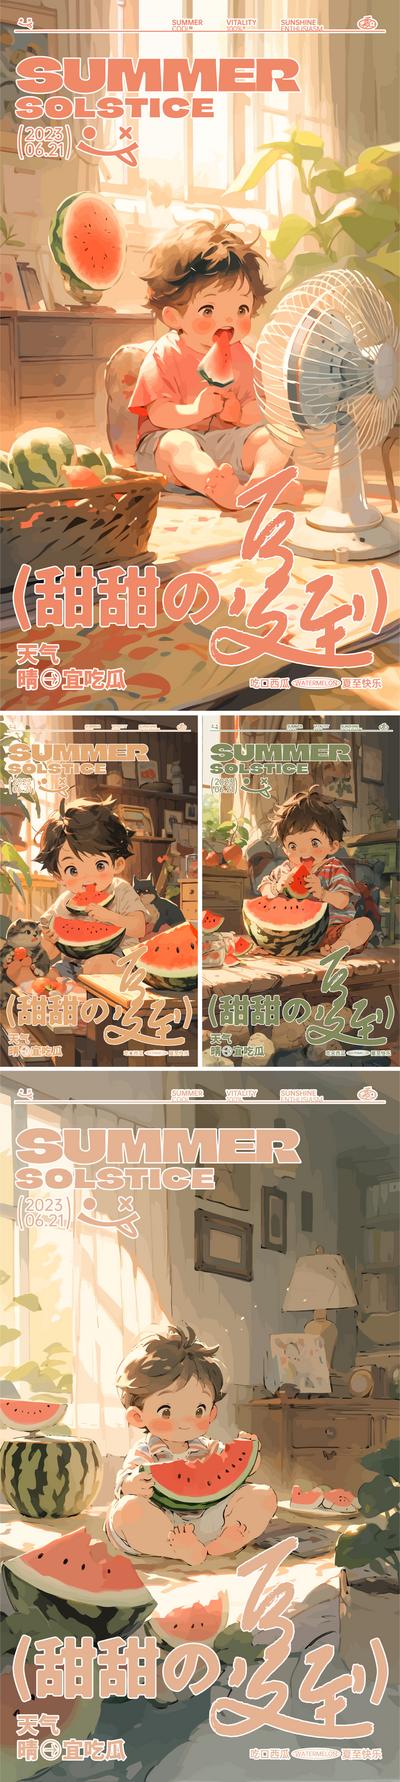 南门网 广告 海报 插画 夏至 二十四节气 西瓜 吃瓜 小孩 男孩 避暑 水果 可爱